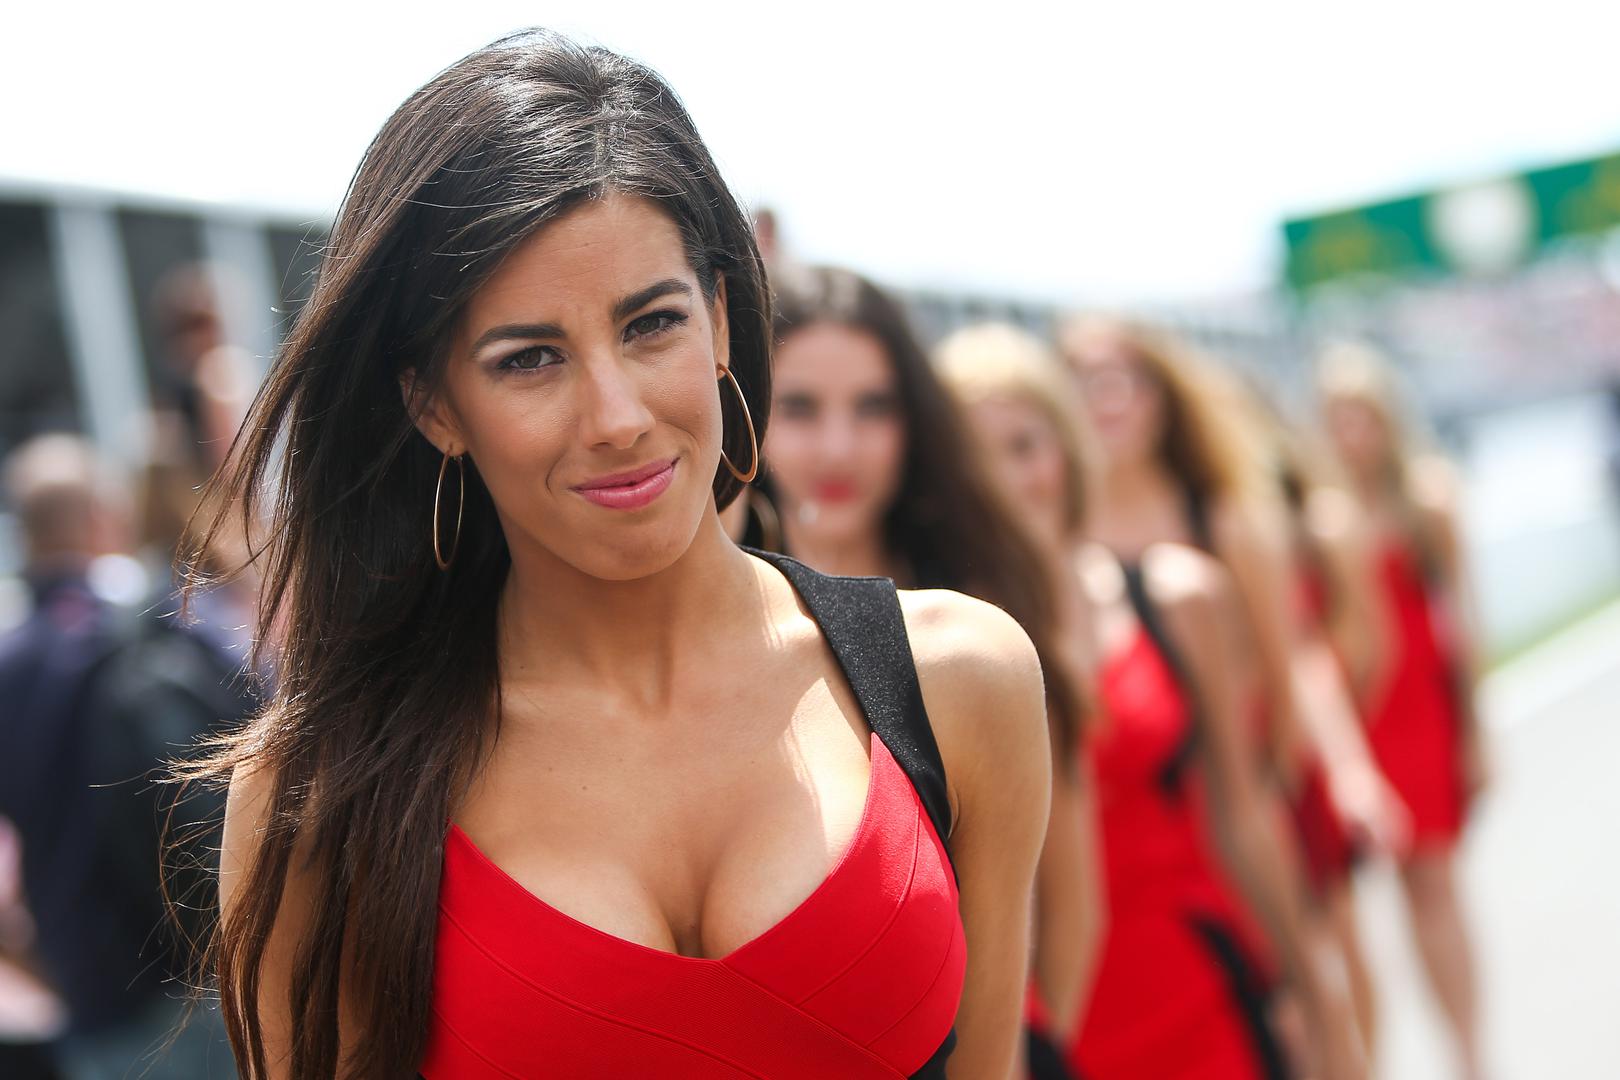 Na početku sezone čelni ljudi Formule 1 odlučili su ukinuti grid djevojke, te su tako razočarali mnoge navijače. 

